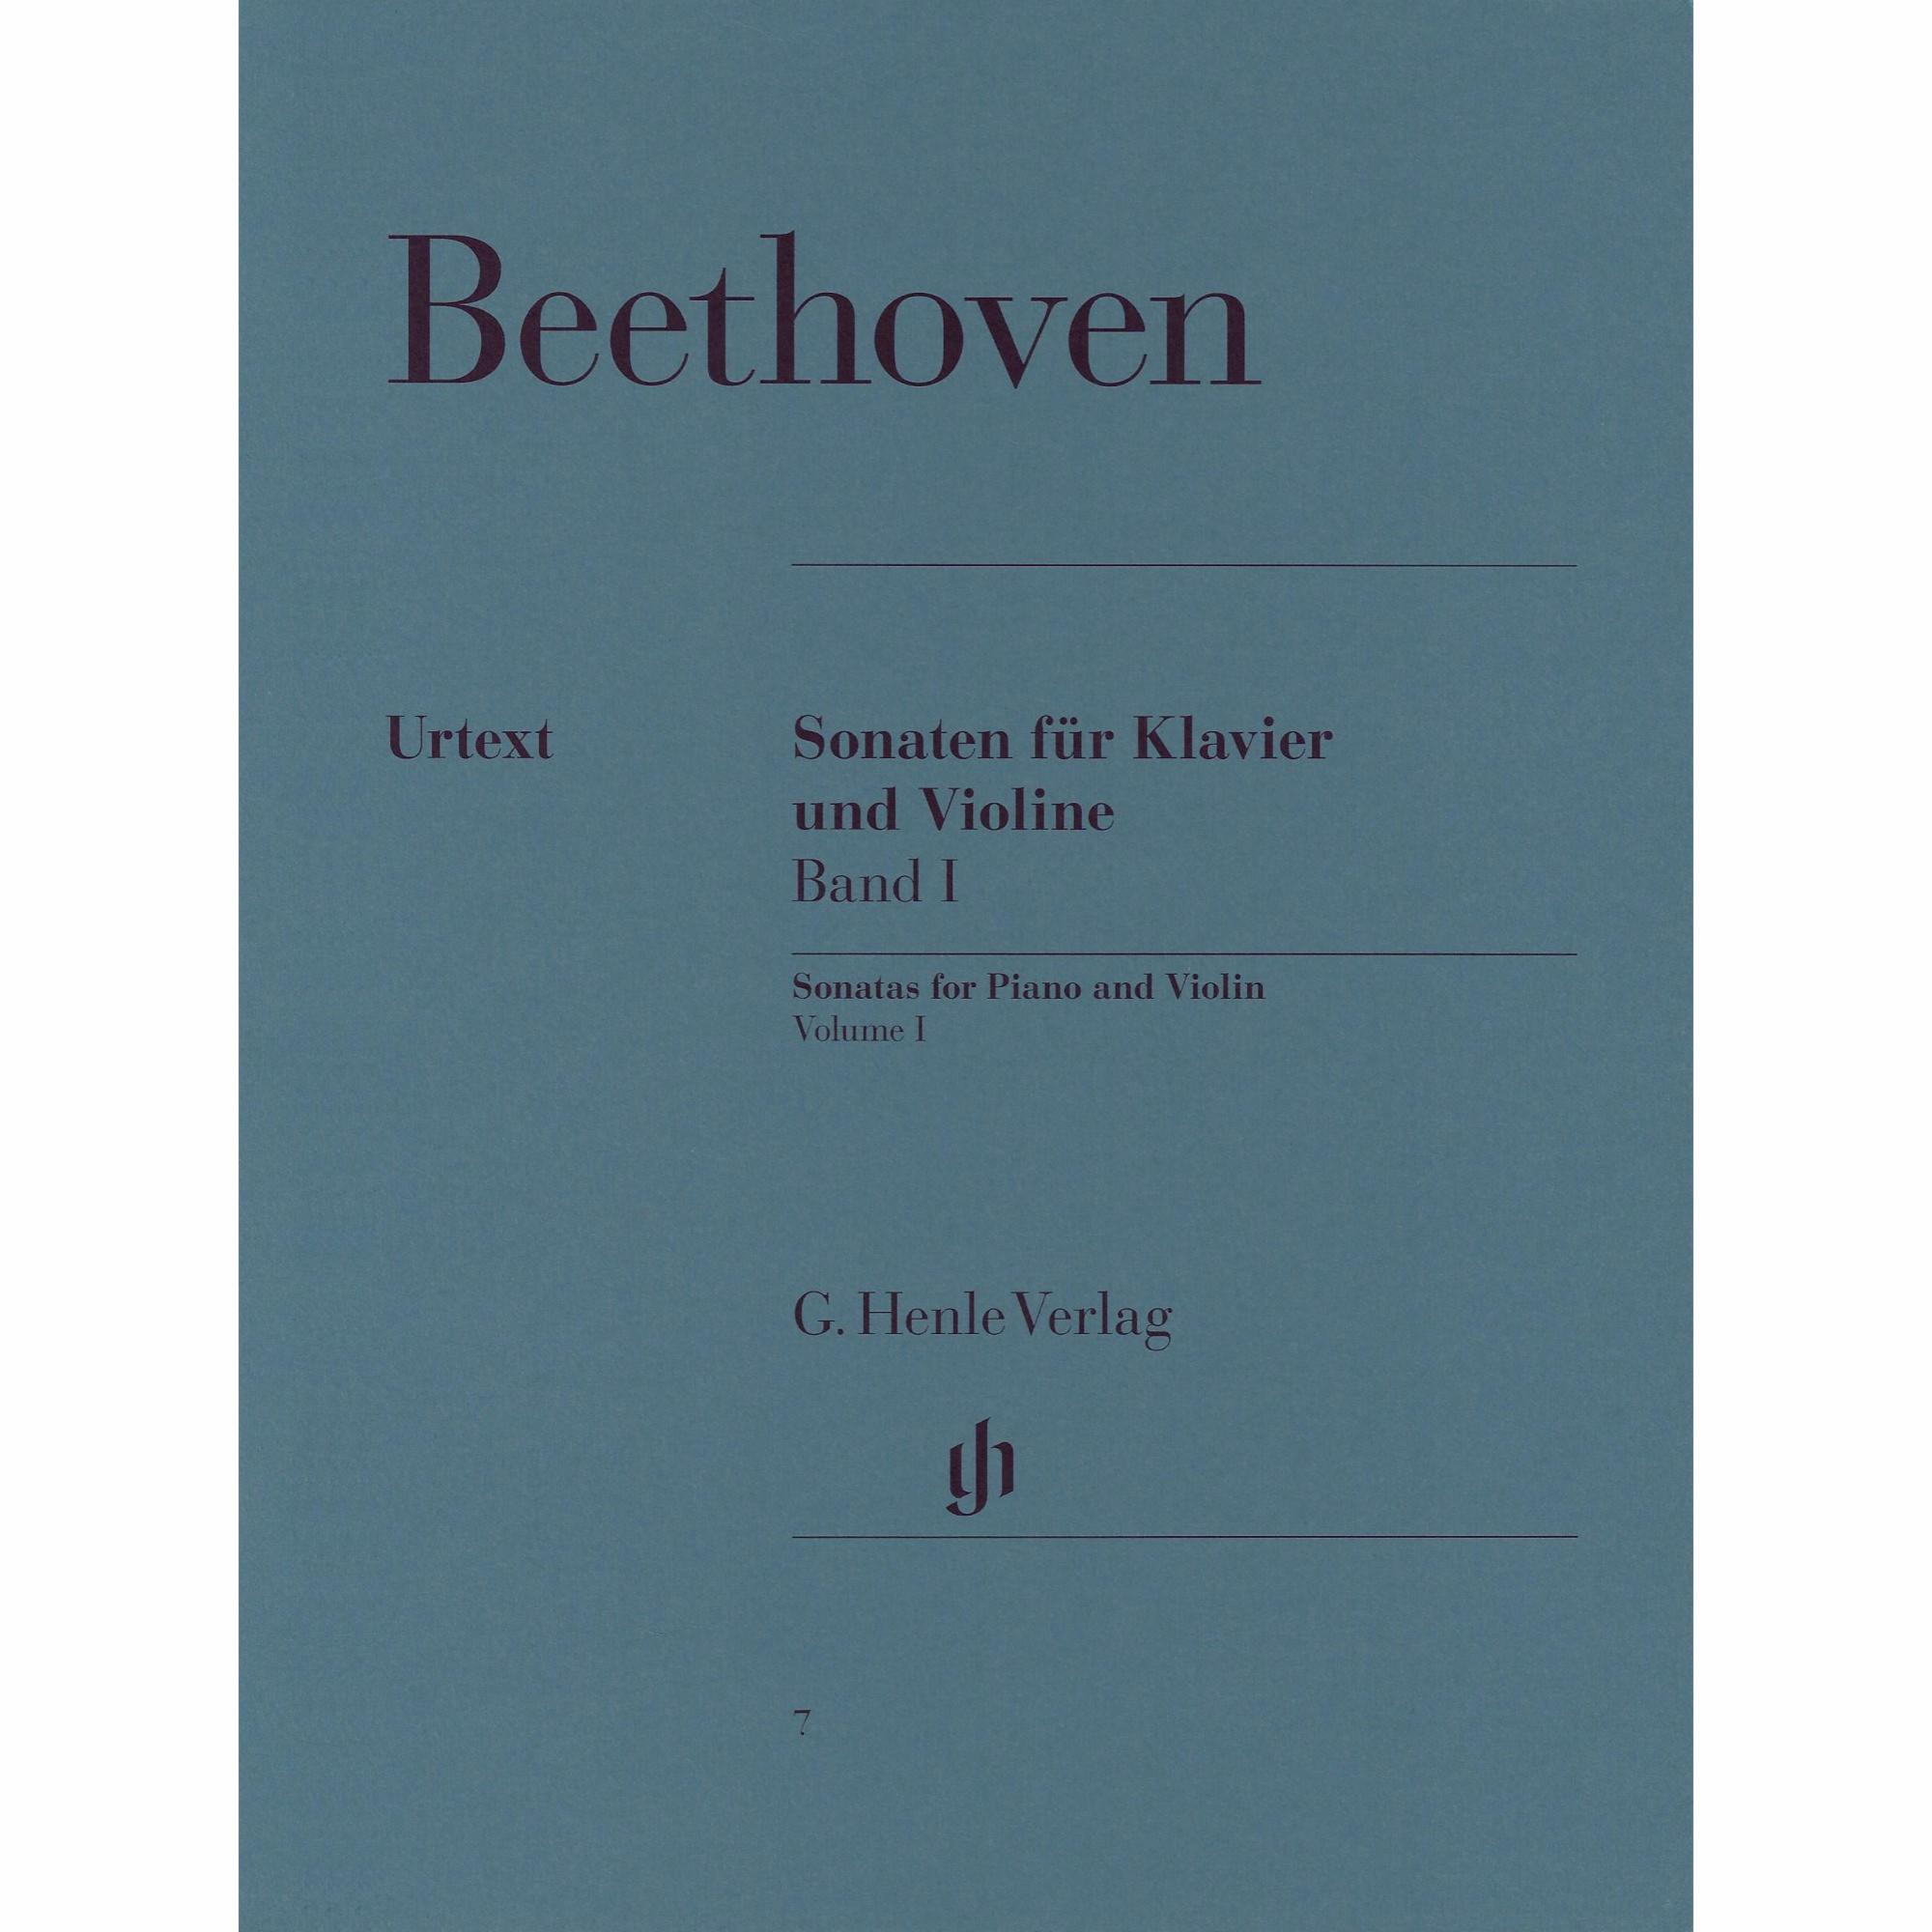 Beethoven -- Sonatas for Violin and Piano, Volumes I-II